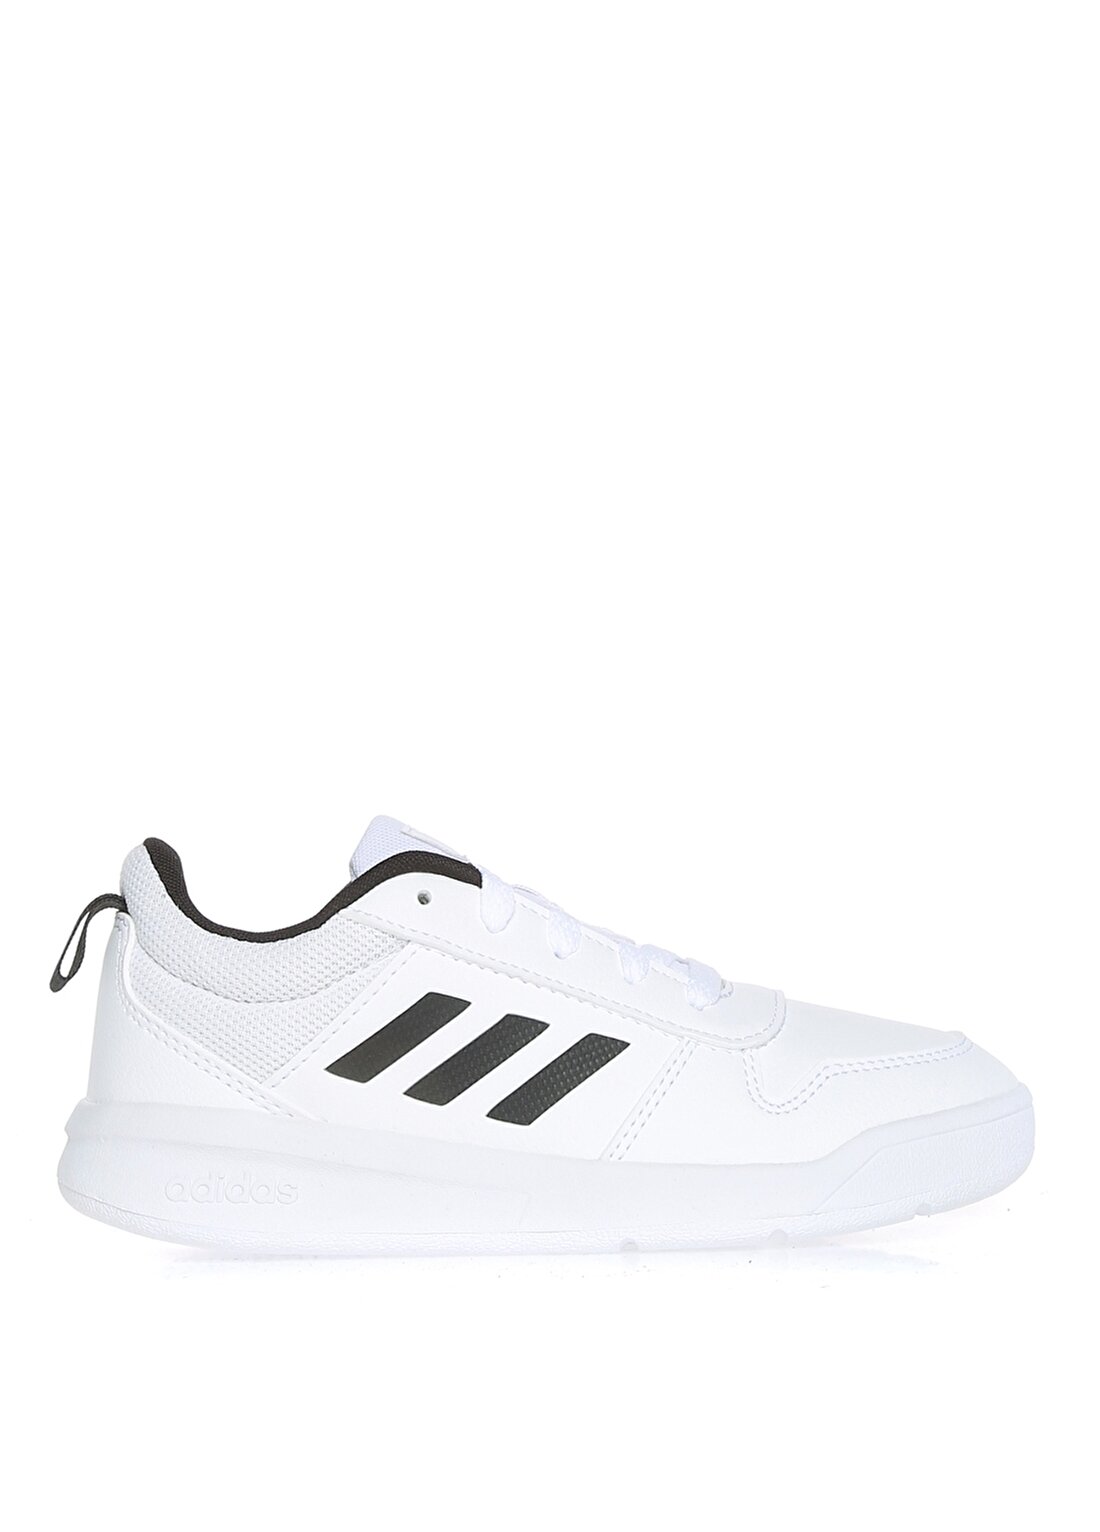 Adidas TENSAUR K Beyaz - Siyah Erkek Çocuk Yürüyüş Ayakkabısı